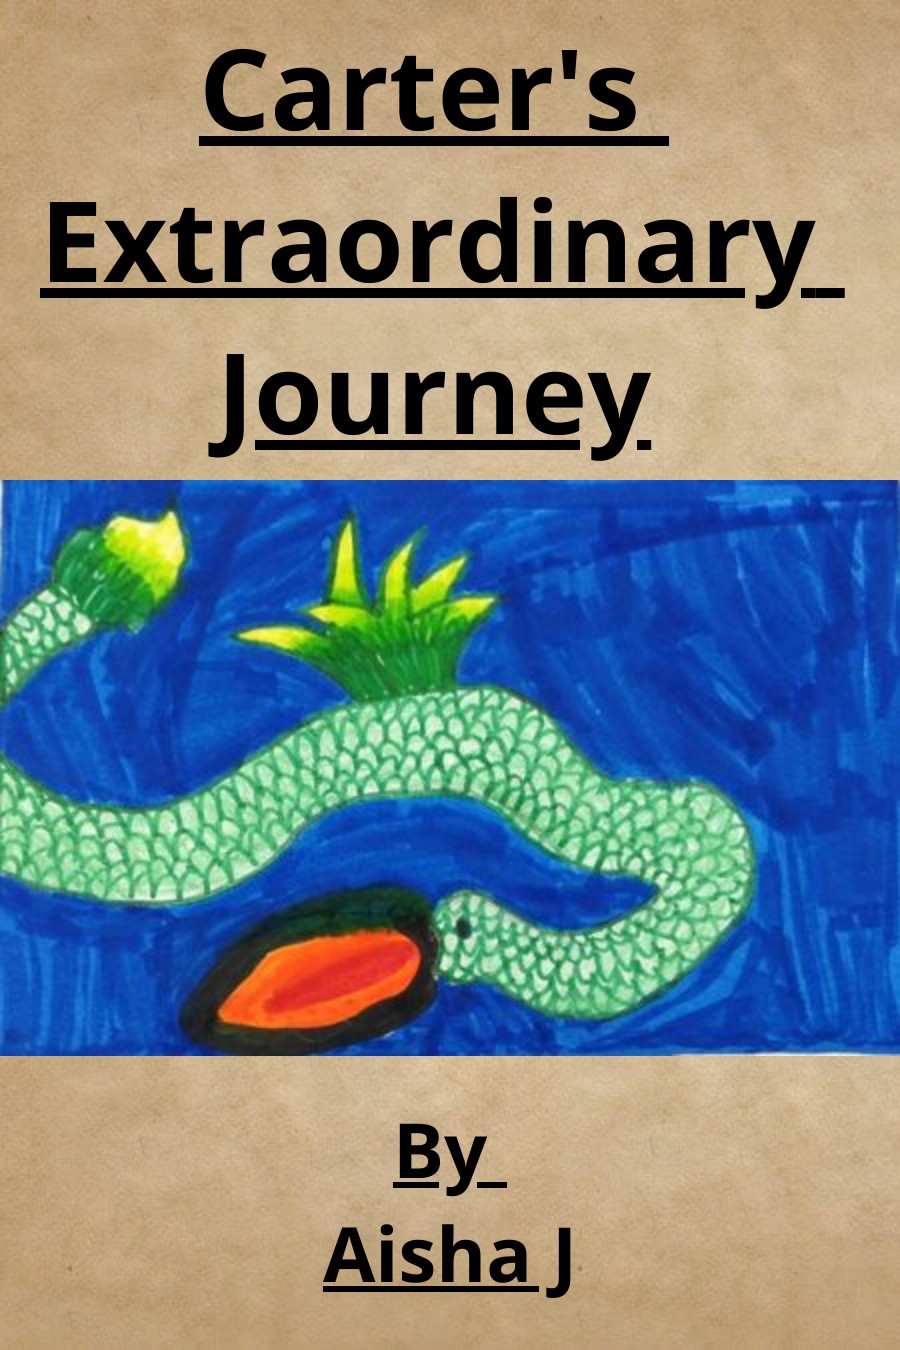 Carter’s Extraordinary Journey by Aisha J